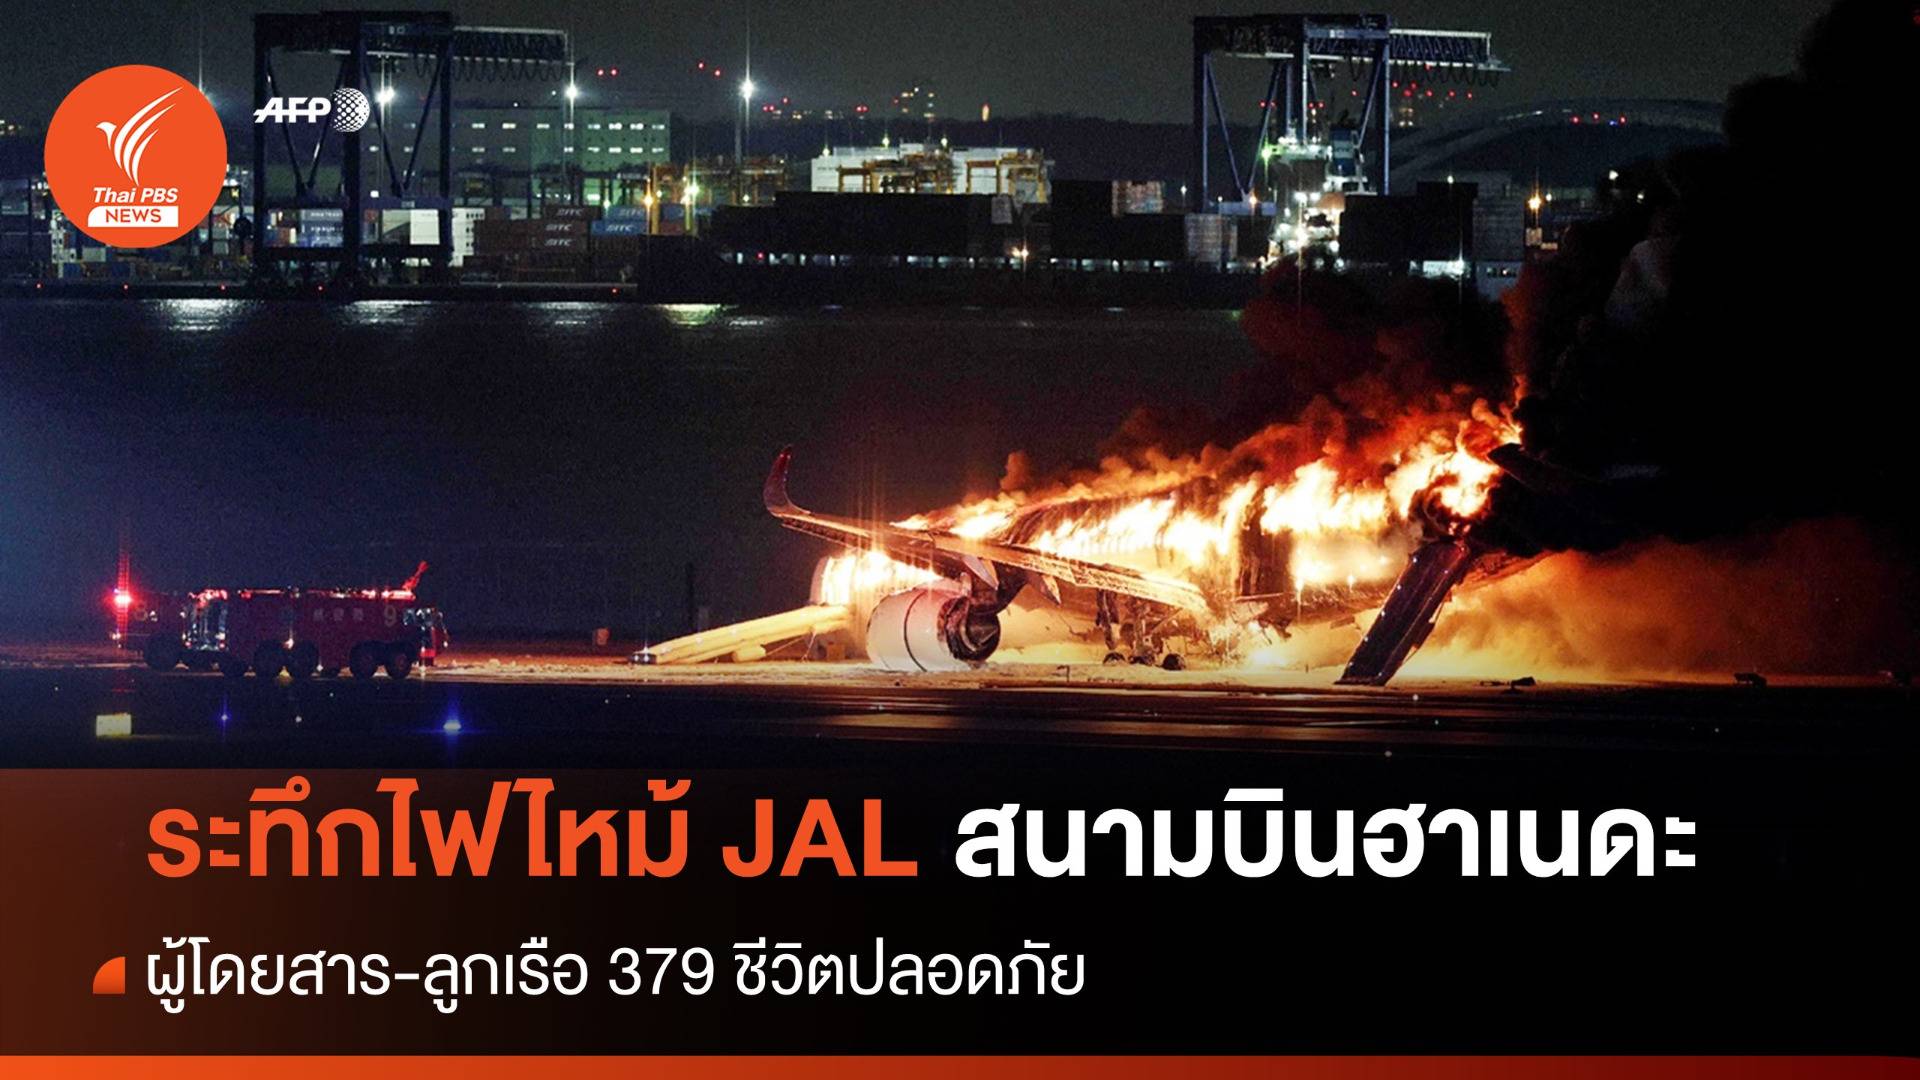 ระทึก! ไฟไหม้เครื่องบิน  Japan Airlines ผู้โดยสาร-ลูกเรือ 379 ชีวิตปลอดภัย